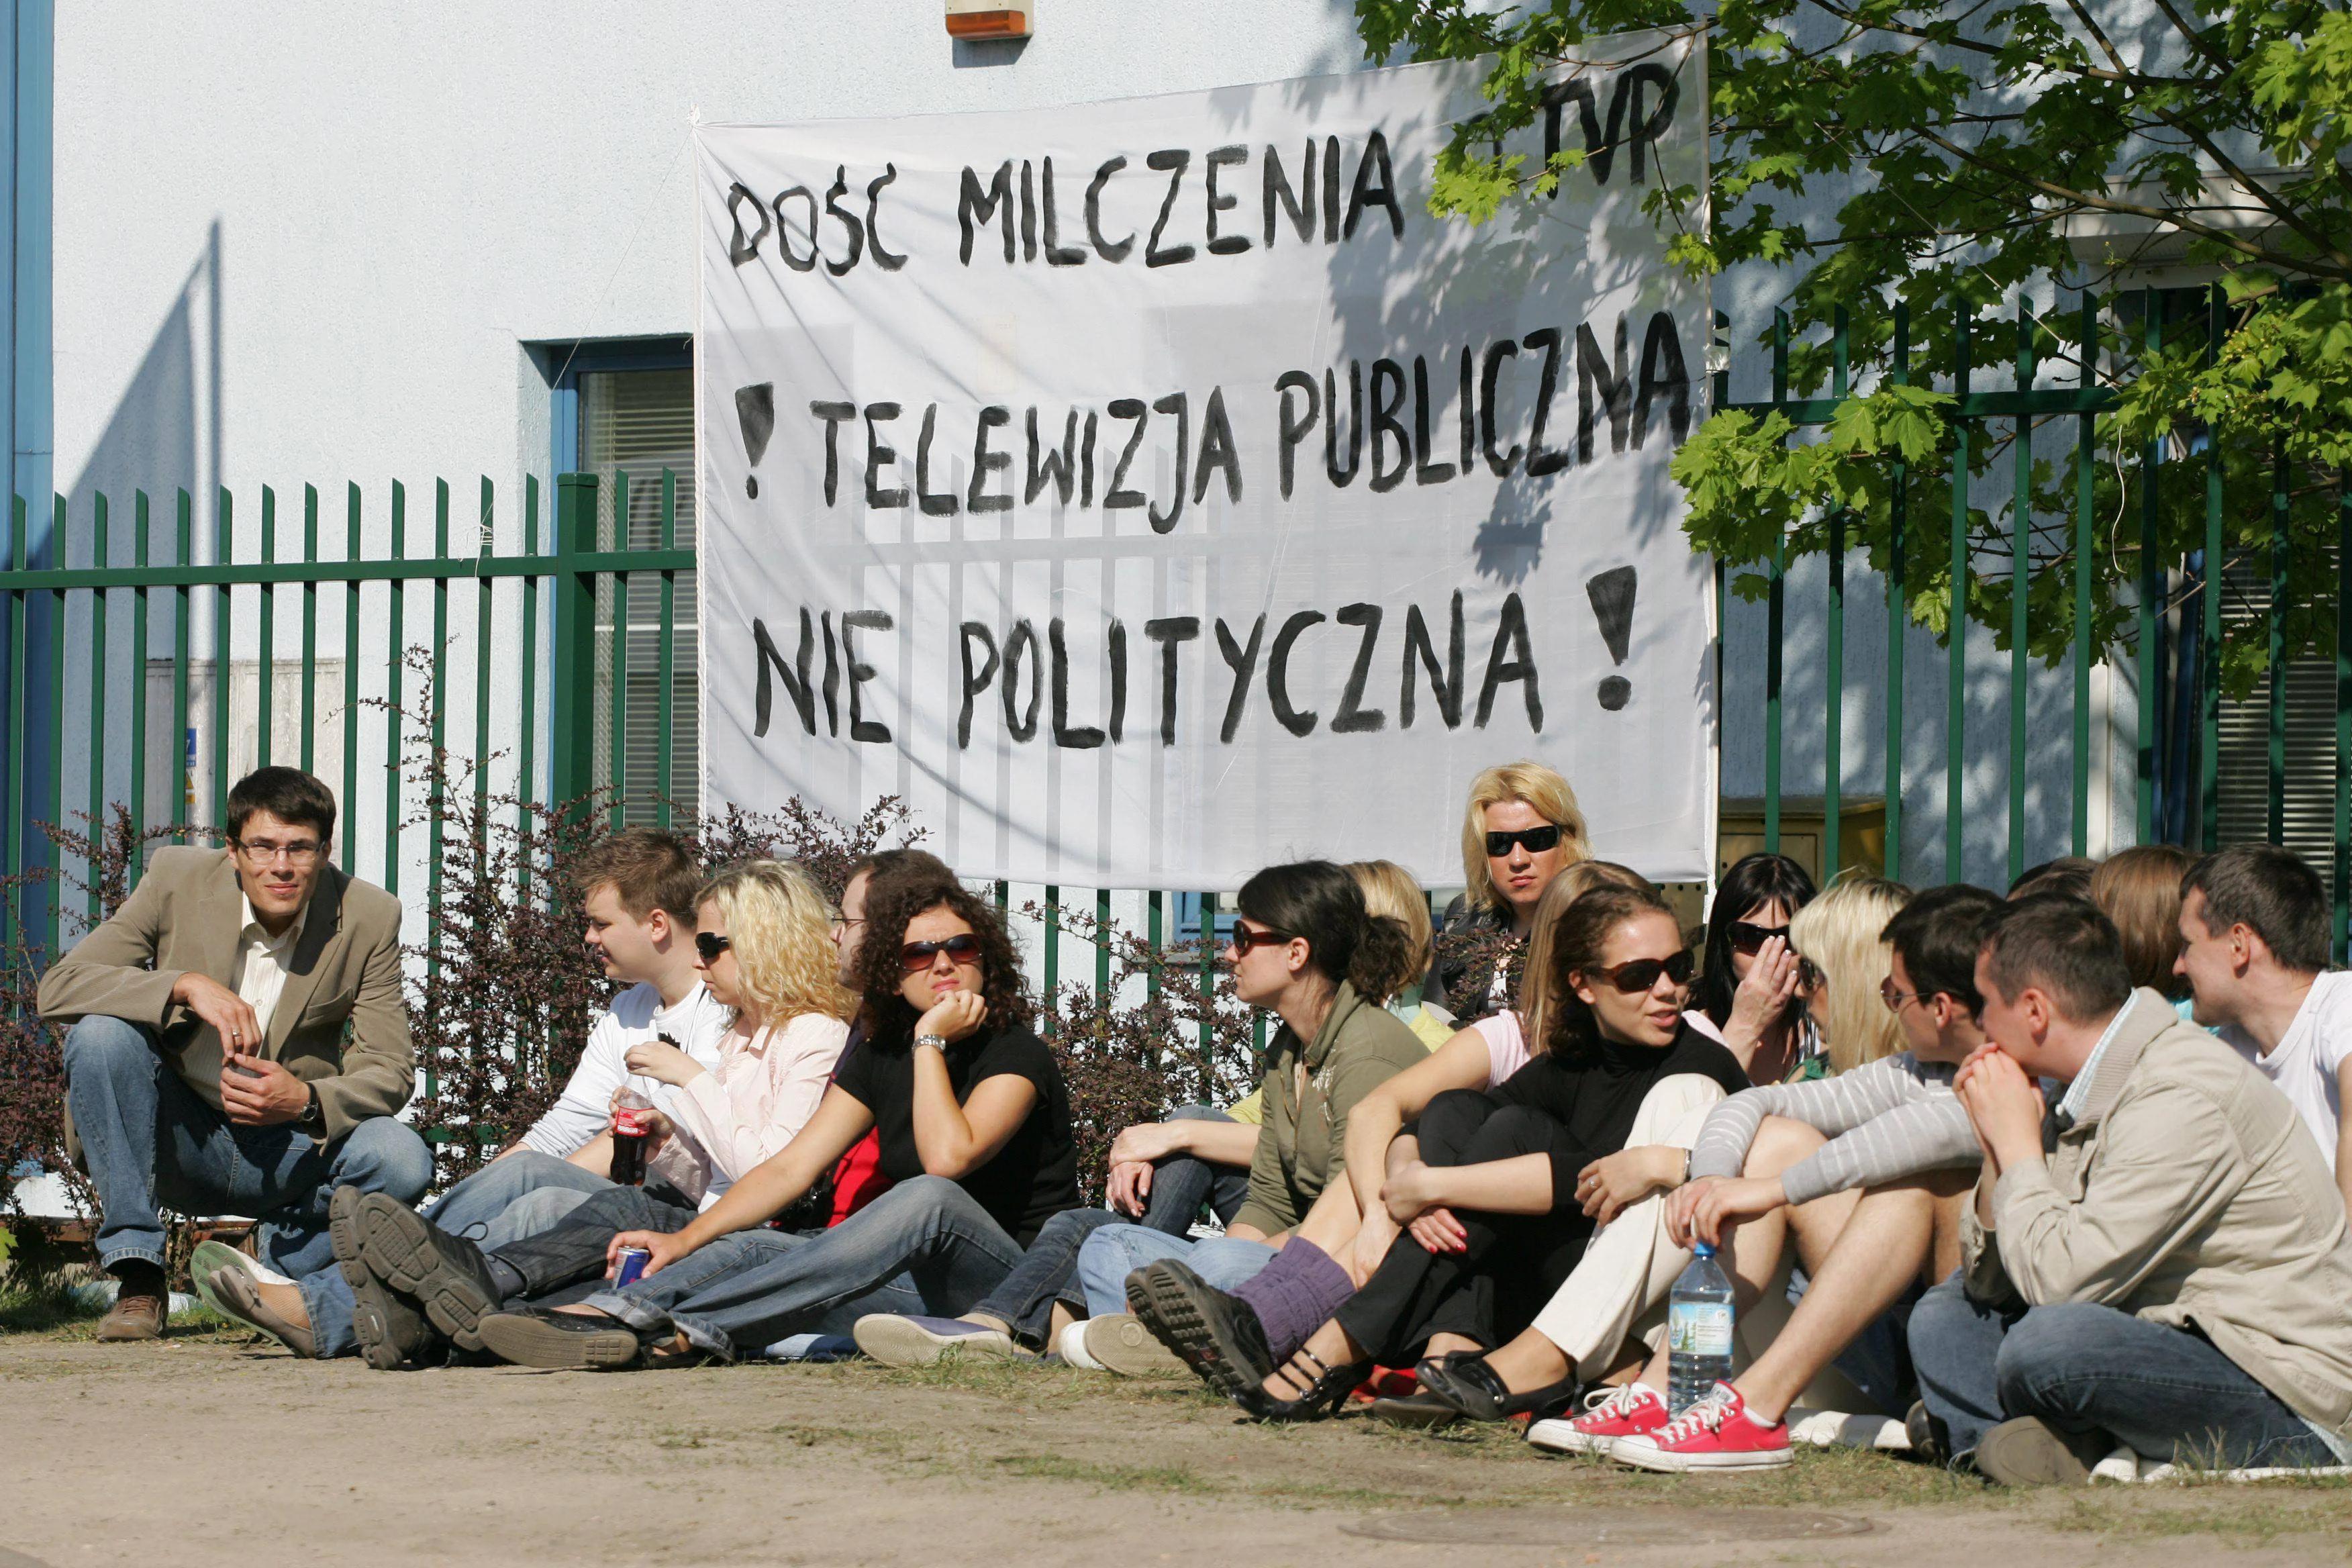 grupa ludzi siedząca przed transparentem domagającym się publicznej, nie politycznej telewizji